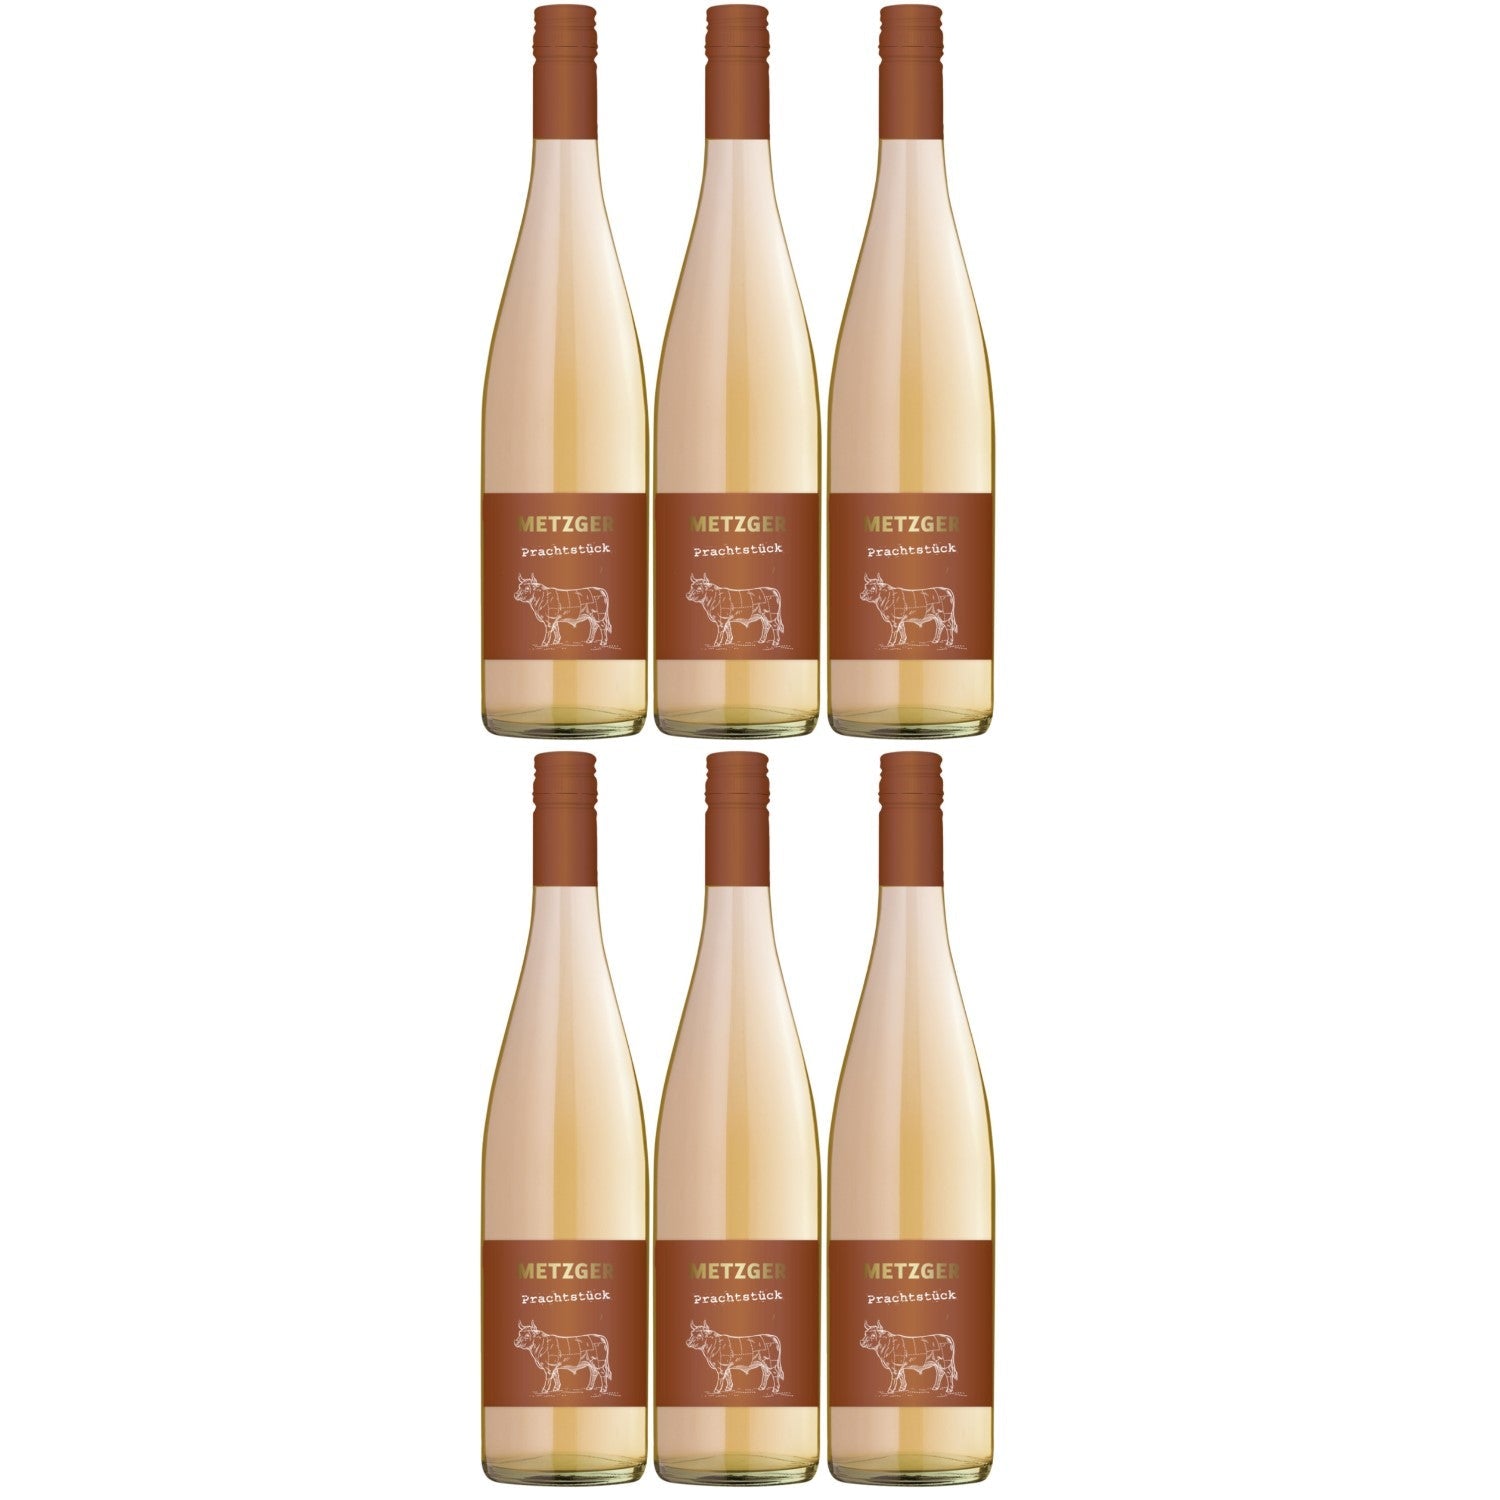 Metzger Prachtstück Roséwein Wein trocken KuhbA Deutschland (6 x 0.75l) - Versanel -